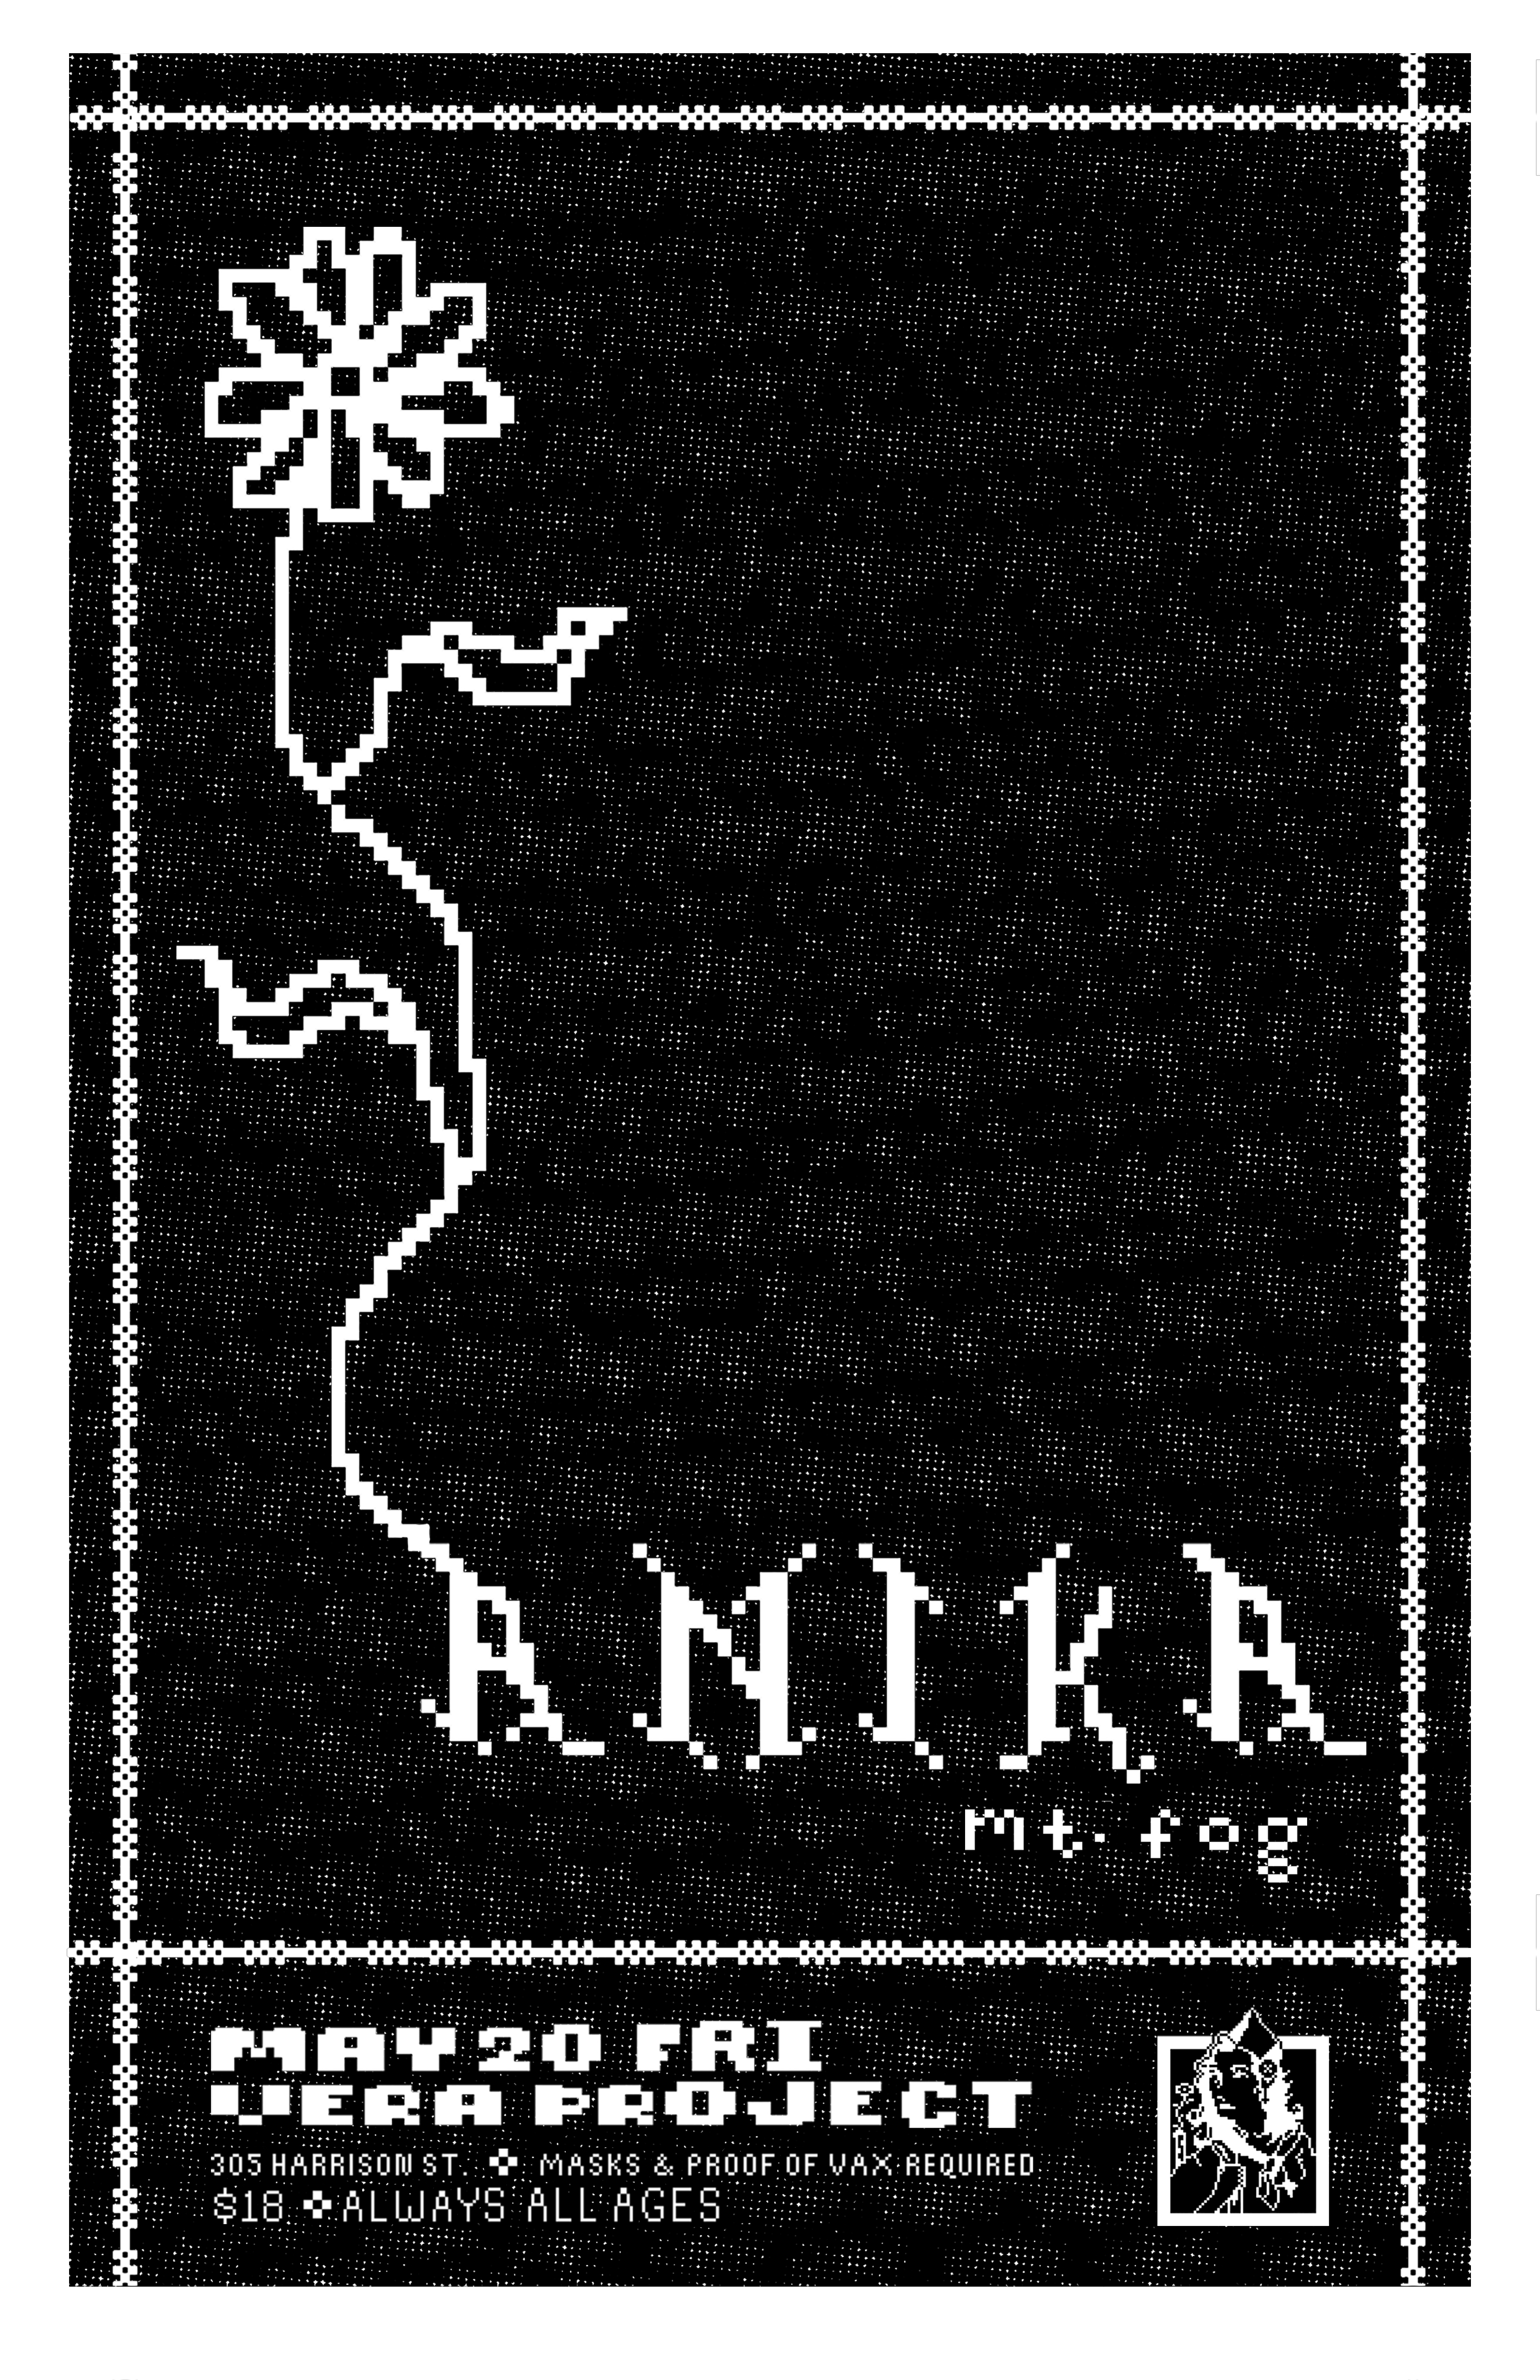 anika / mt.fog // vera project may 20th (2022)